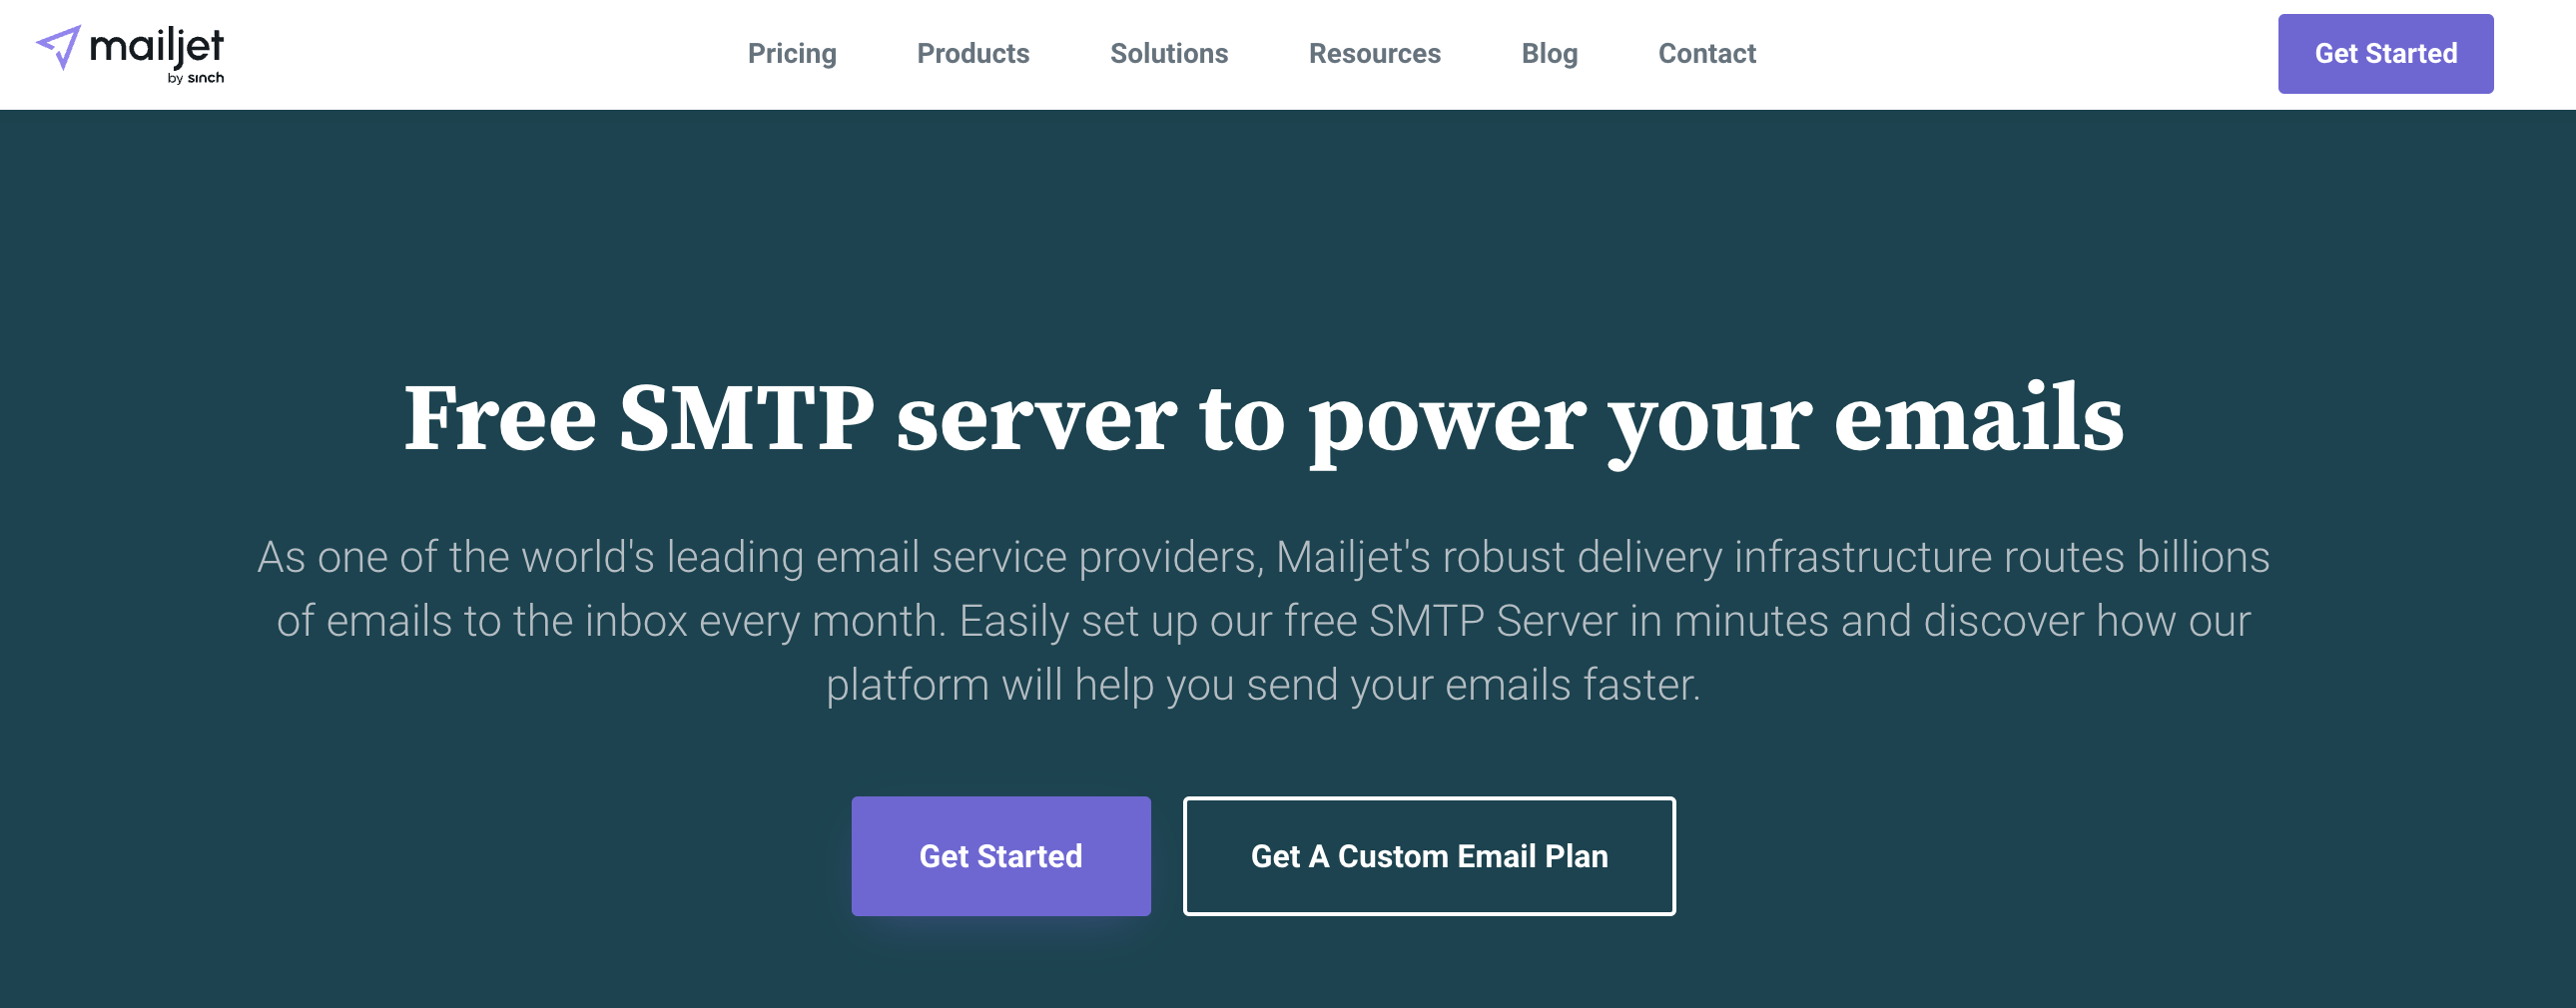 Mailjet free SMTP server